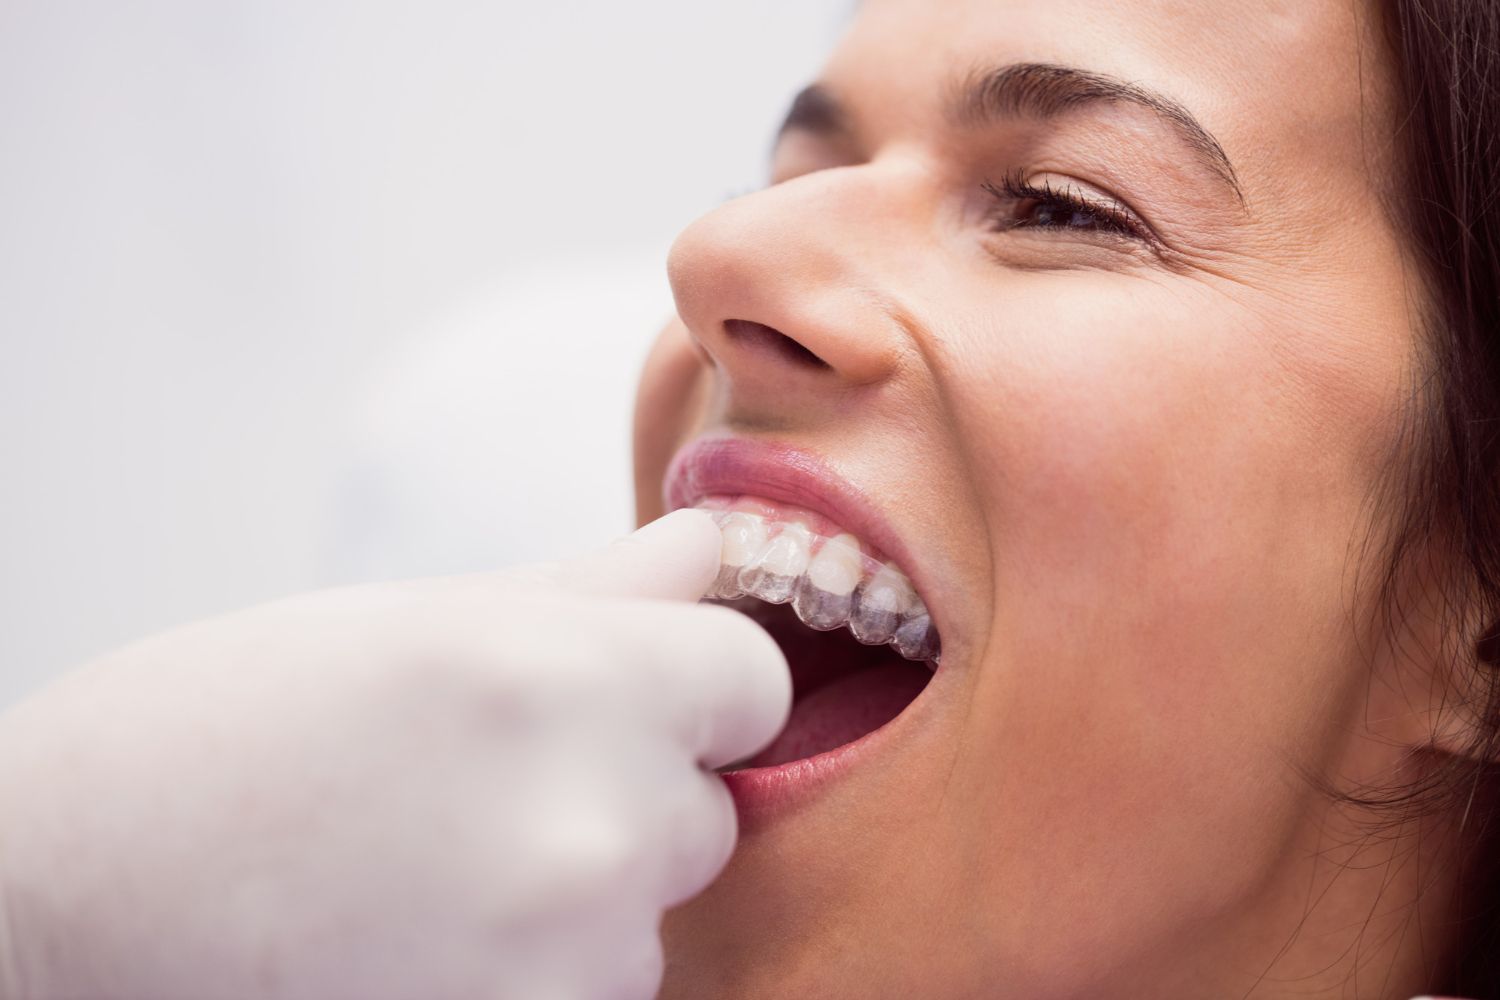 Un tratamiento de ortodoncia que solo alinee los dientes puede acarrear graves problemas de salud